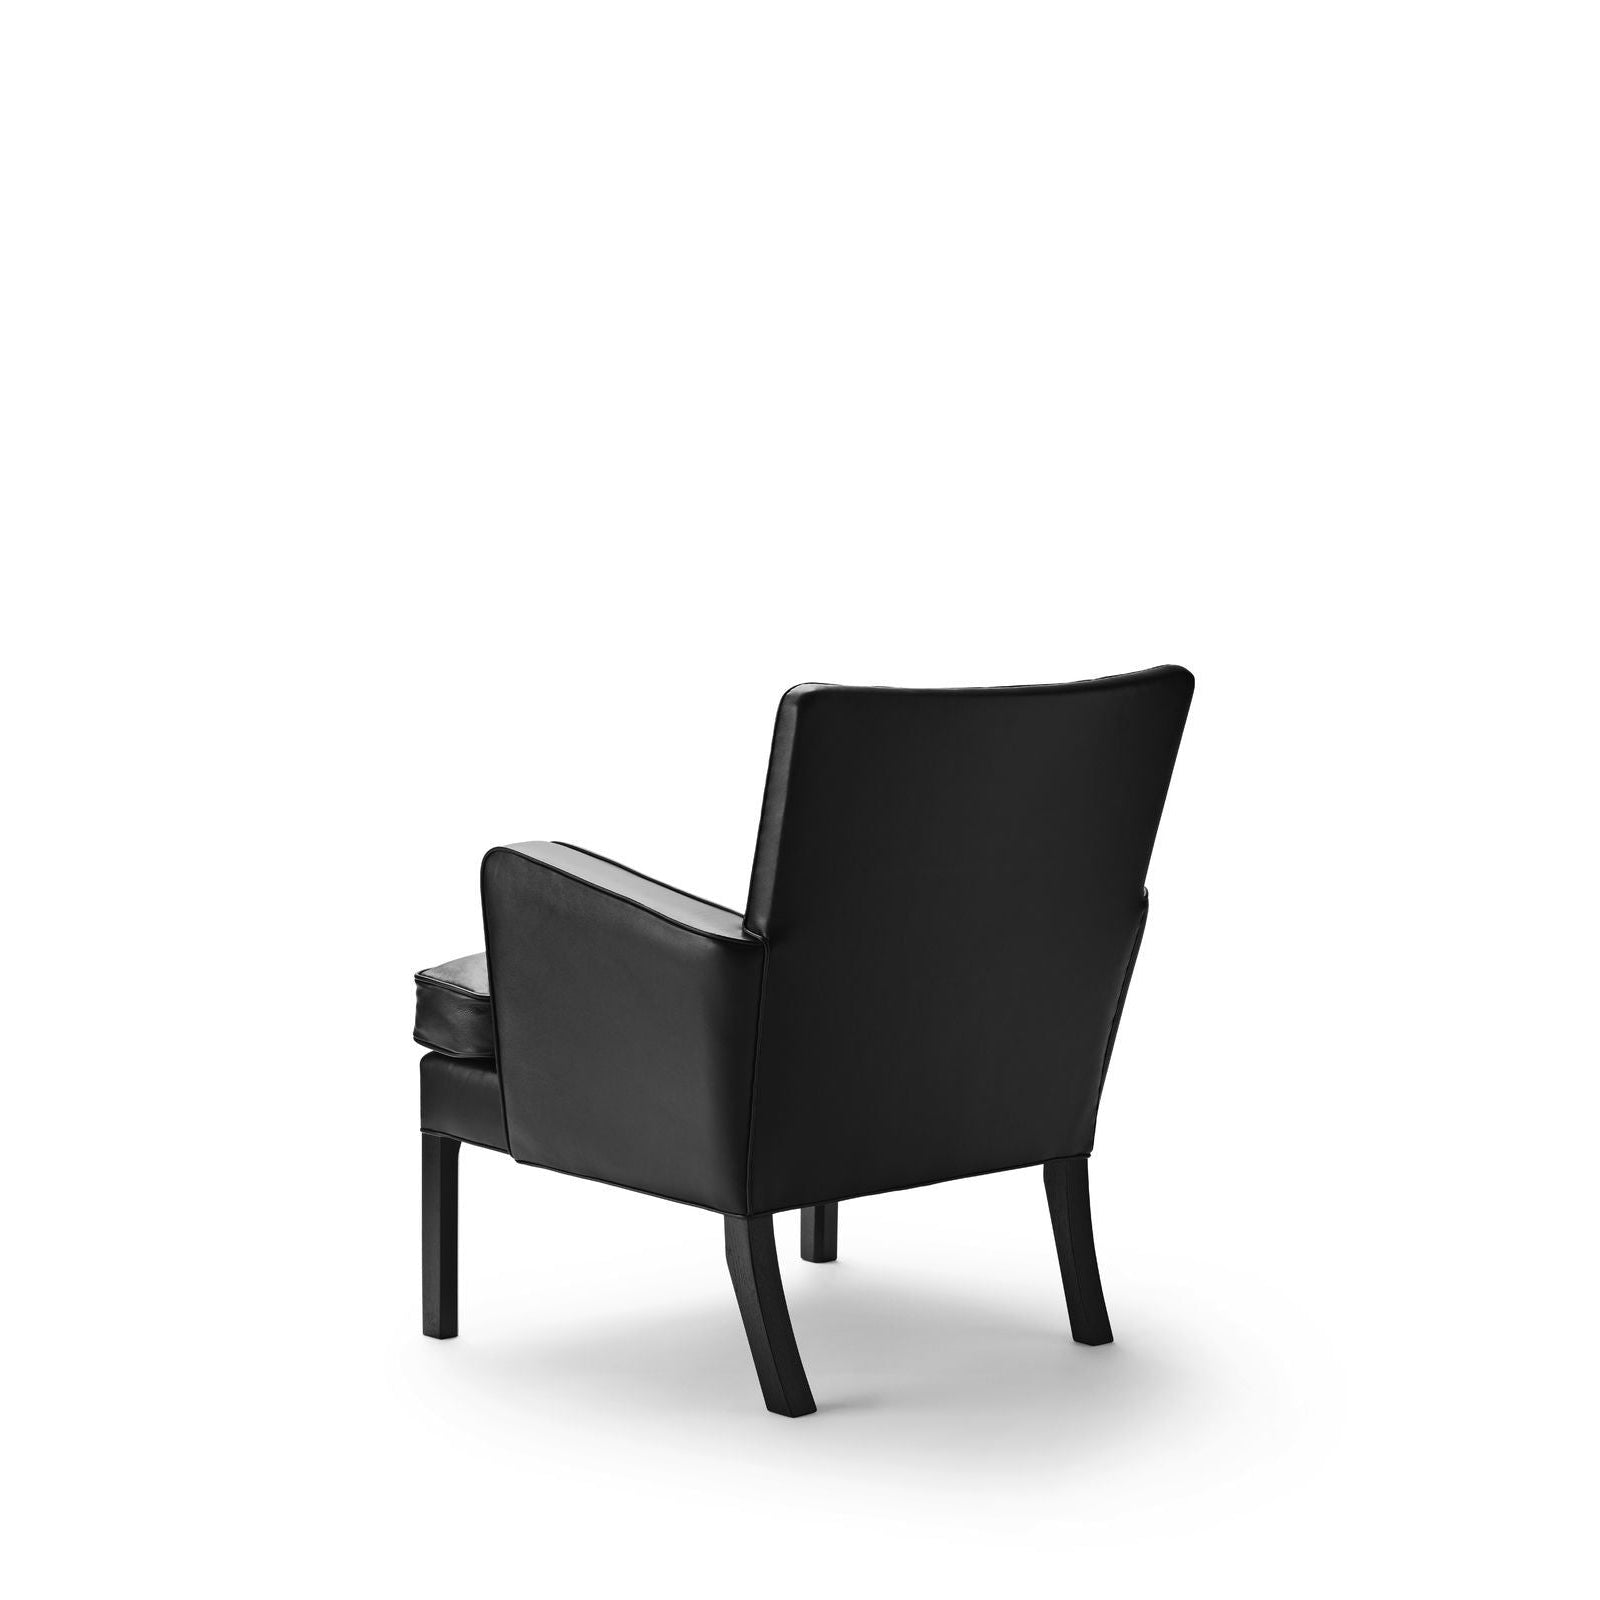 Carl Hansen KK53130 Eenvoudige stoel, zwart eiken/zwart leer